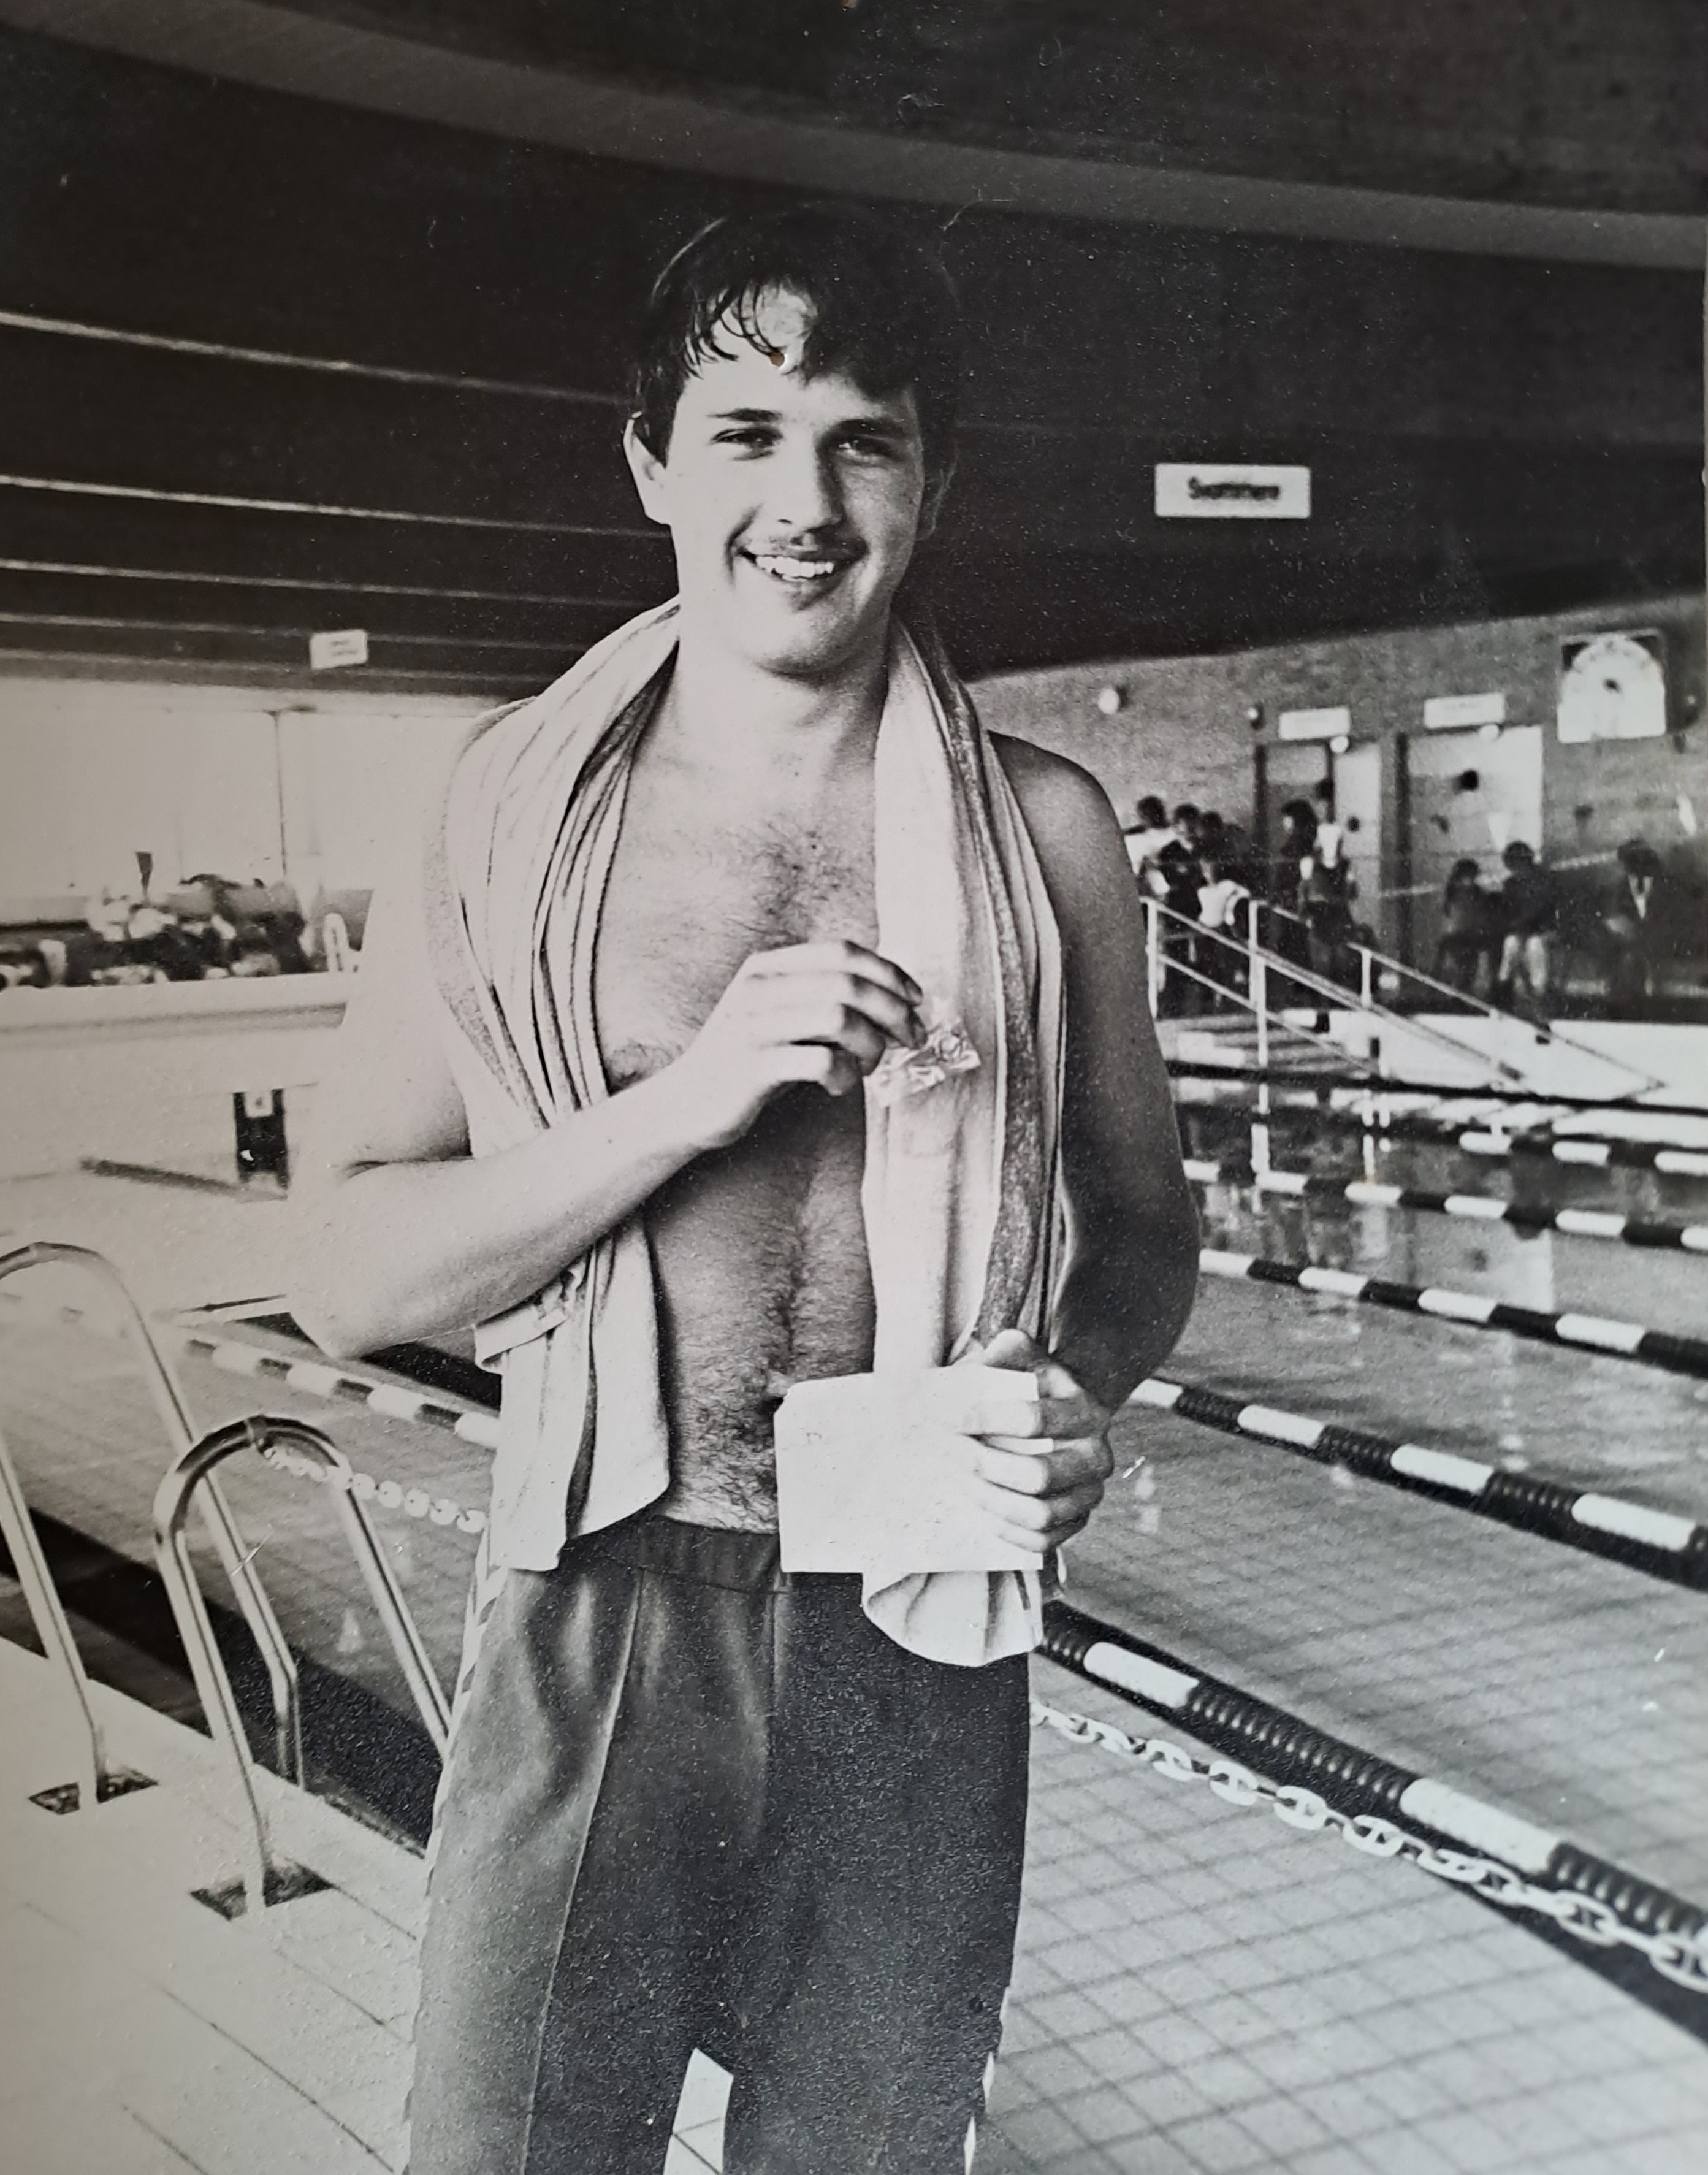 Forfatteren modtager svømmenål i svømmehallen fra ca. 1981 (Eget foto - Peter Tversted)